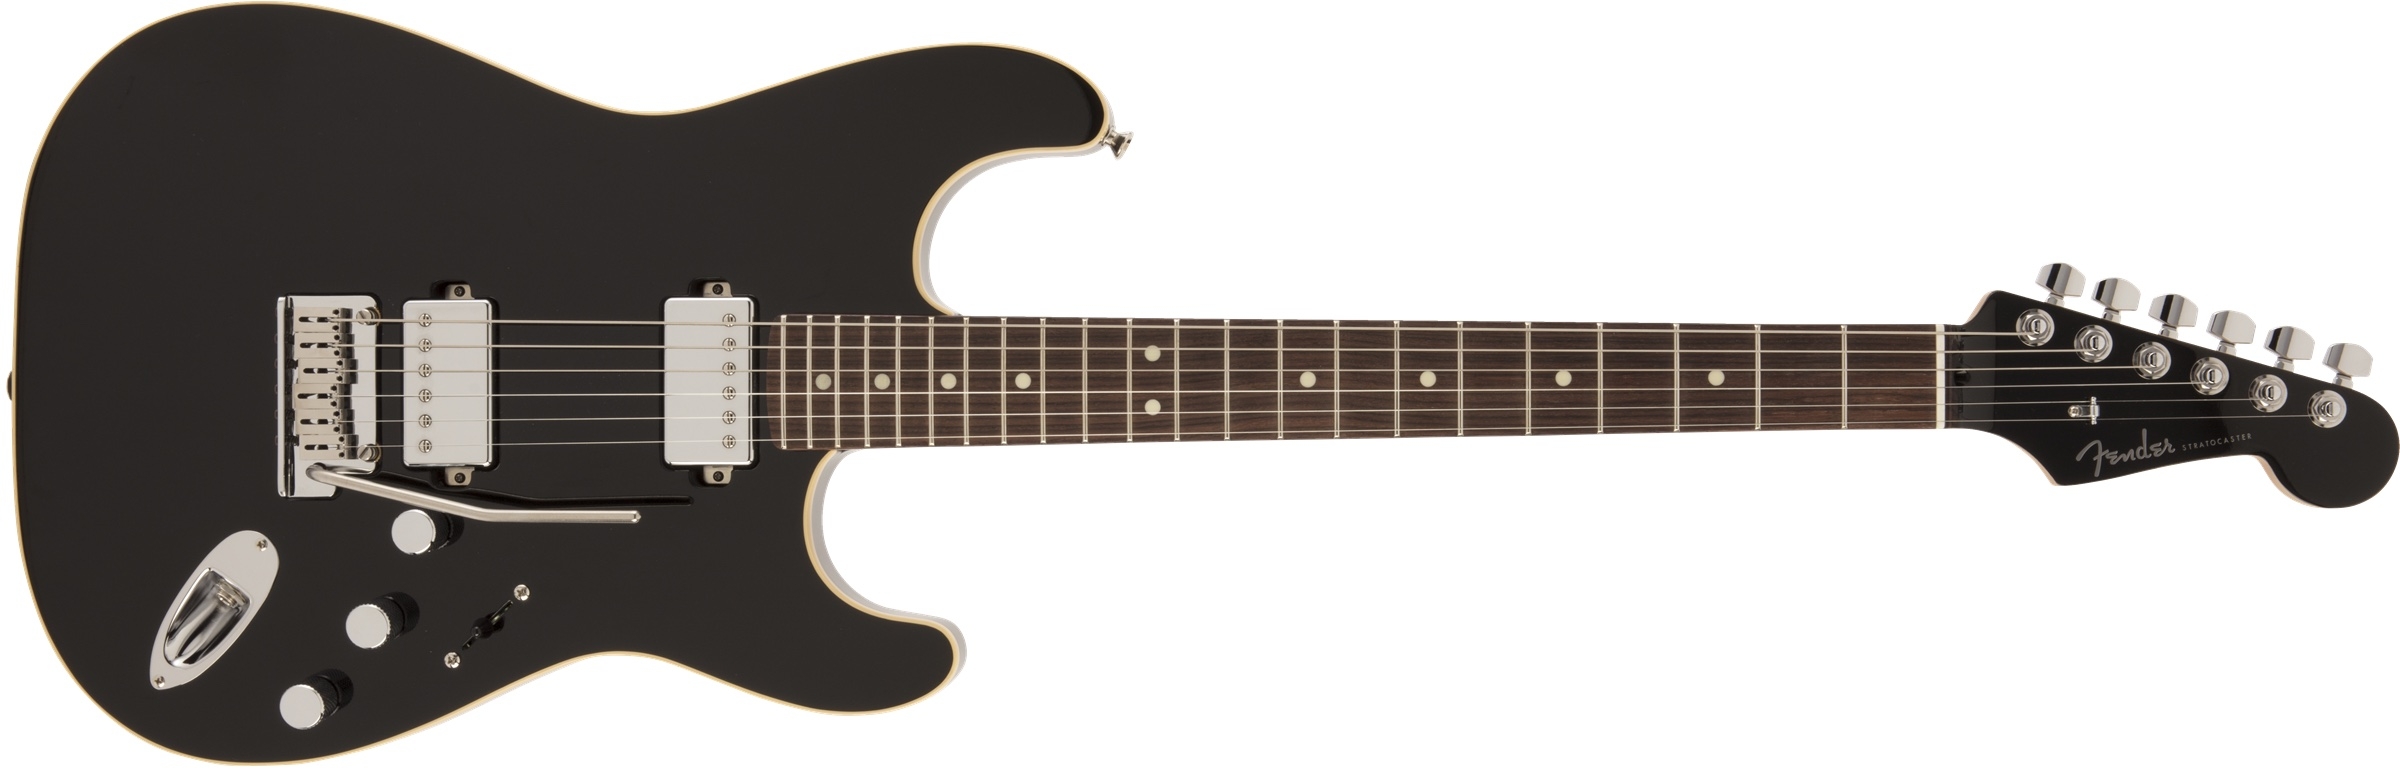 Fender MIJ Modern Stratocaster HH Black Rosewood